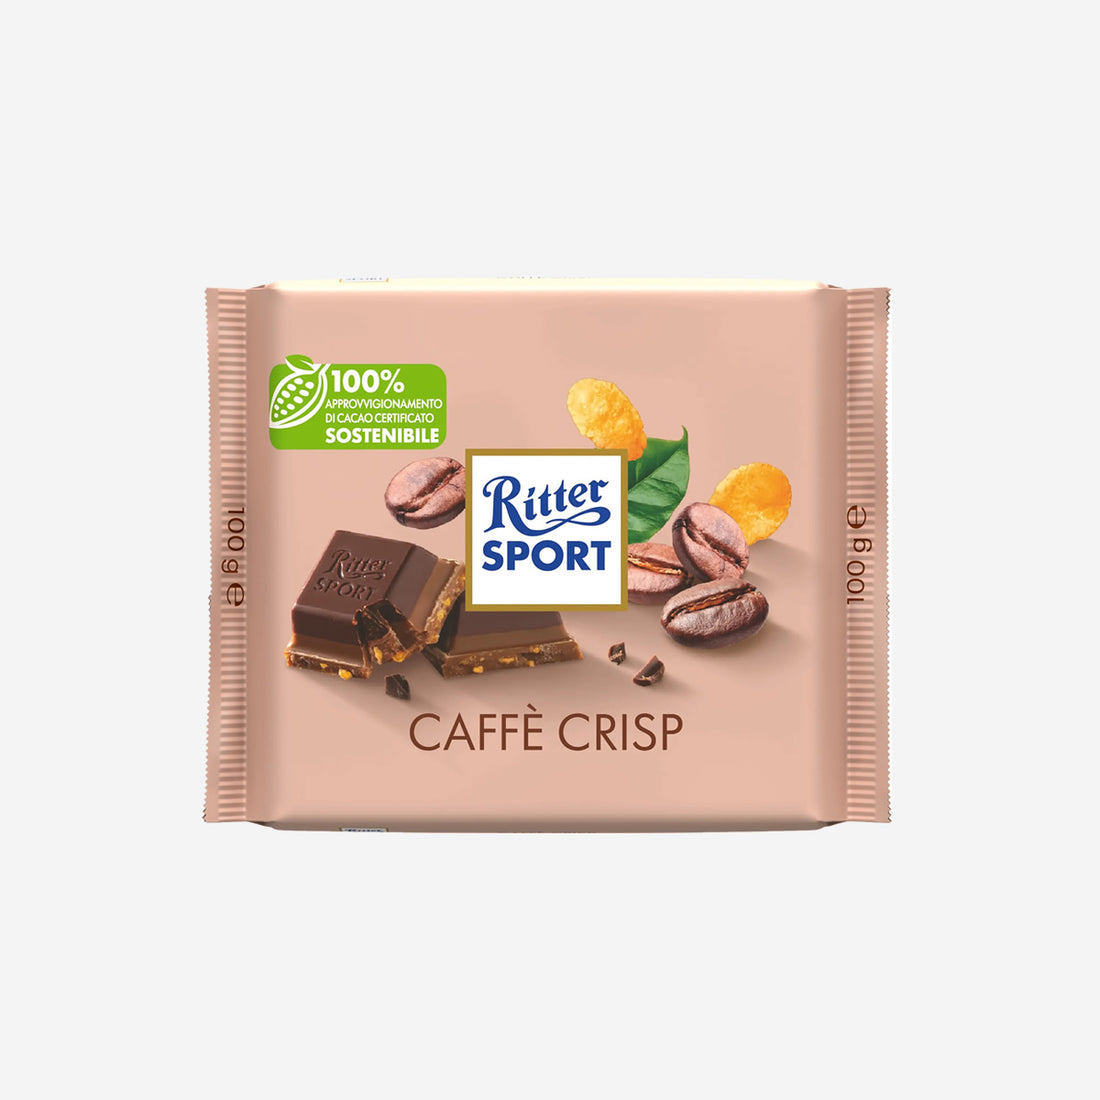 Ritter sport Caffè Crisp